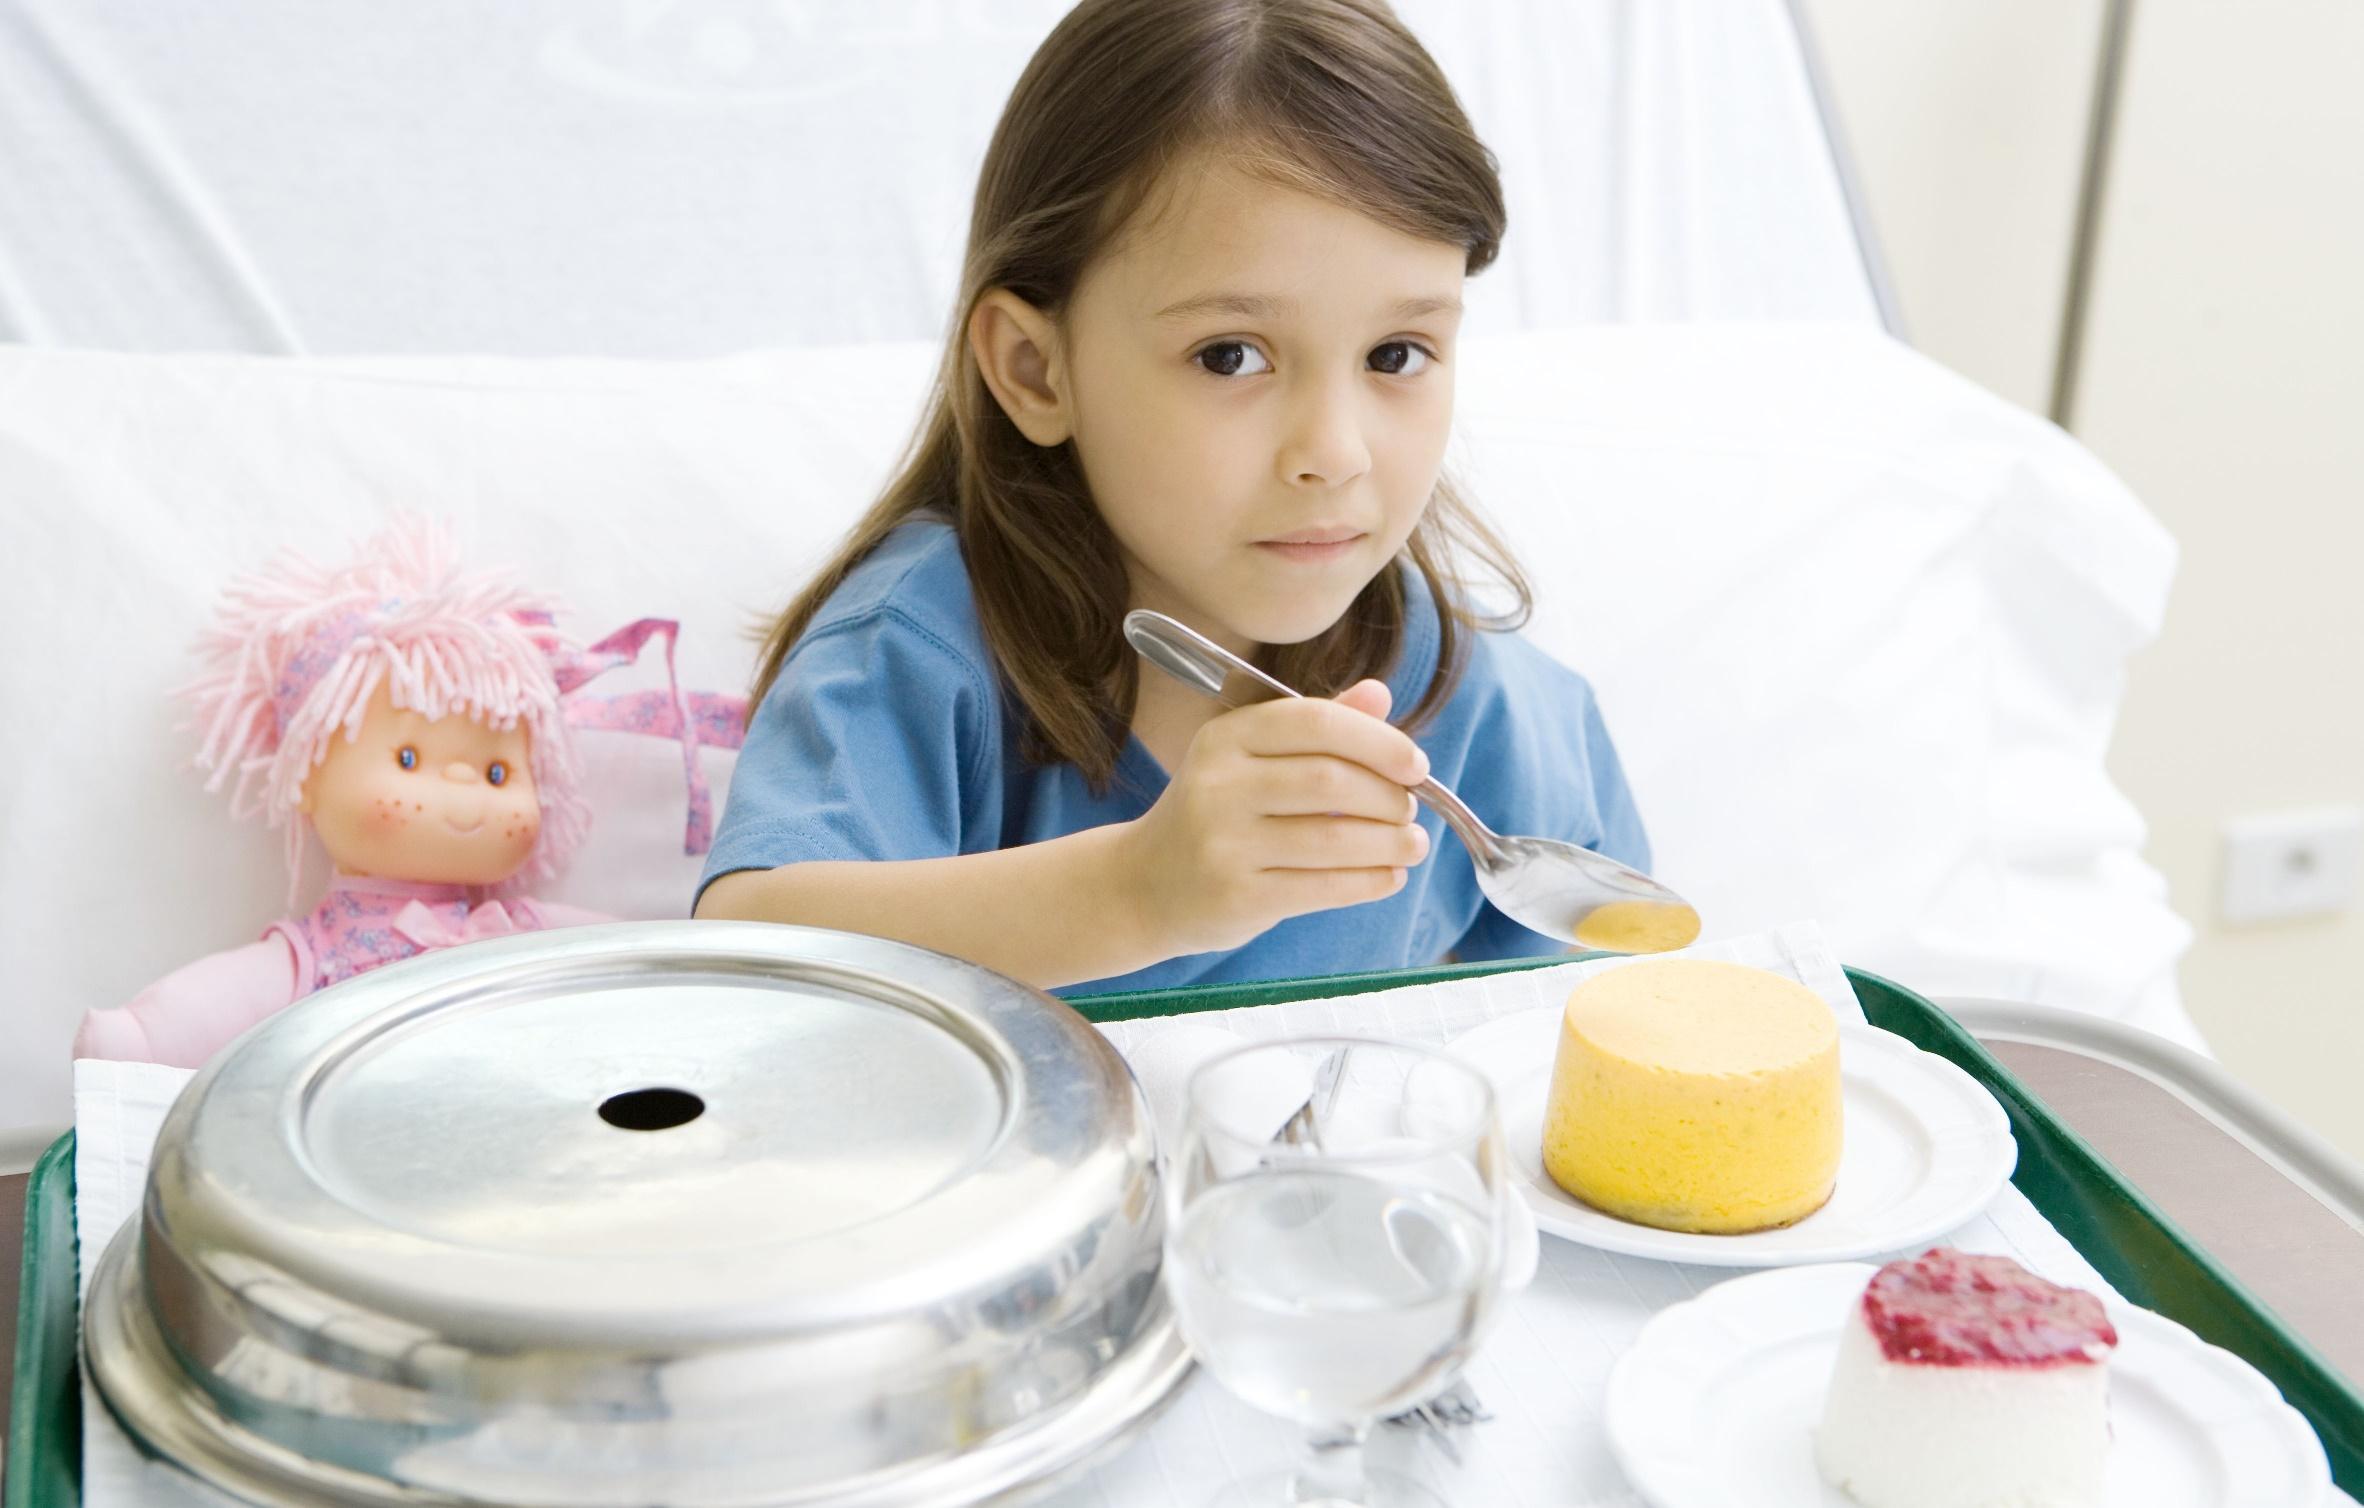 Чтобы исключить распространение инфекции, нужно ребенку выделить отдельную посуду и изолировать в комнате